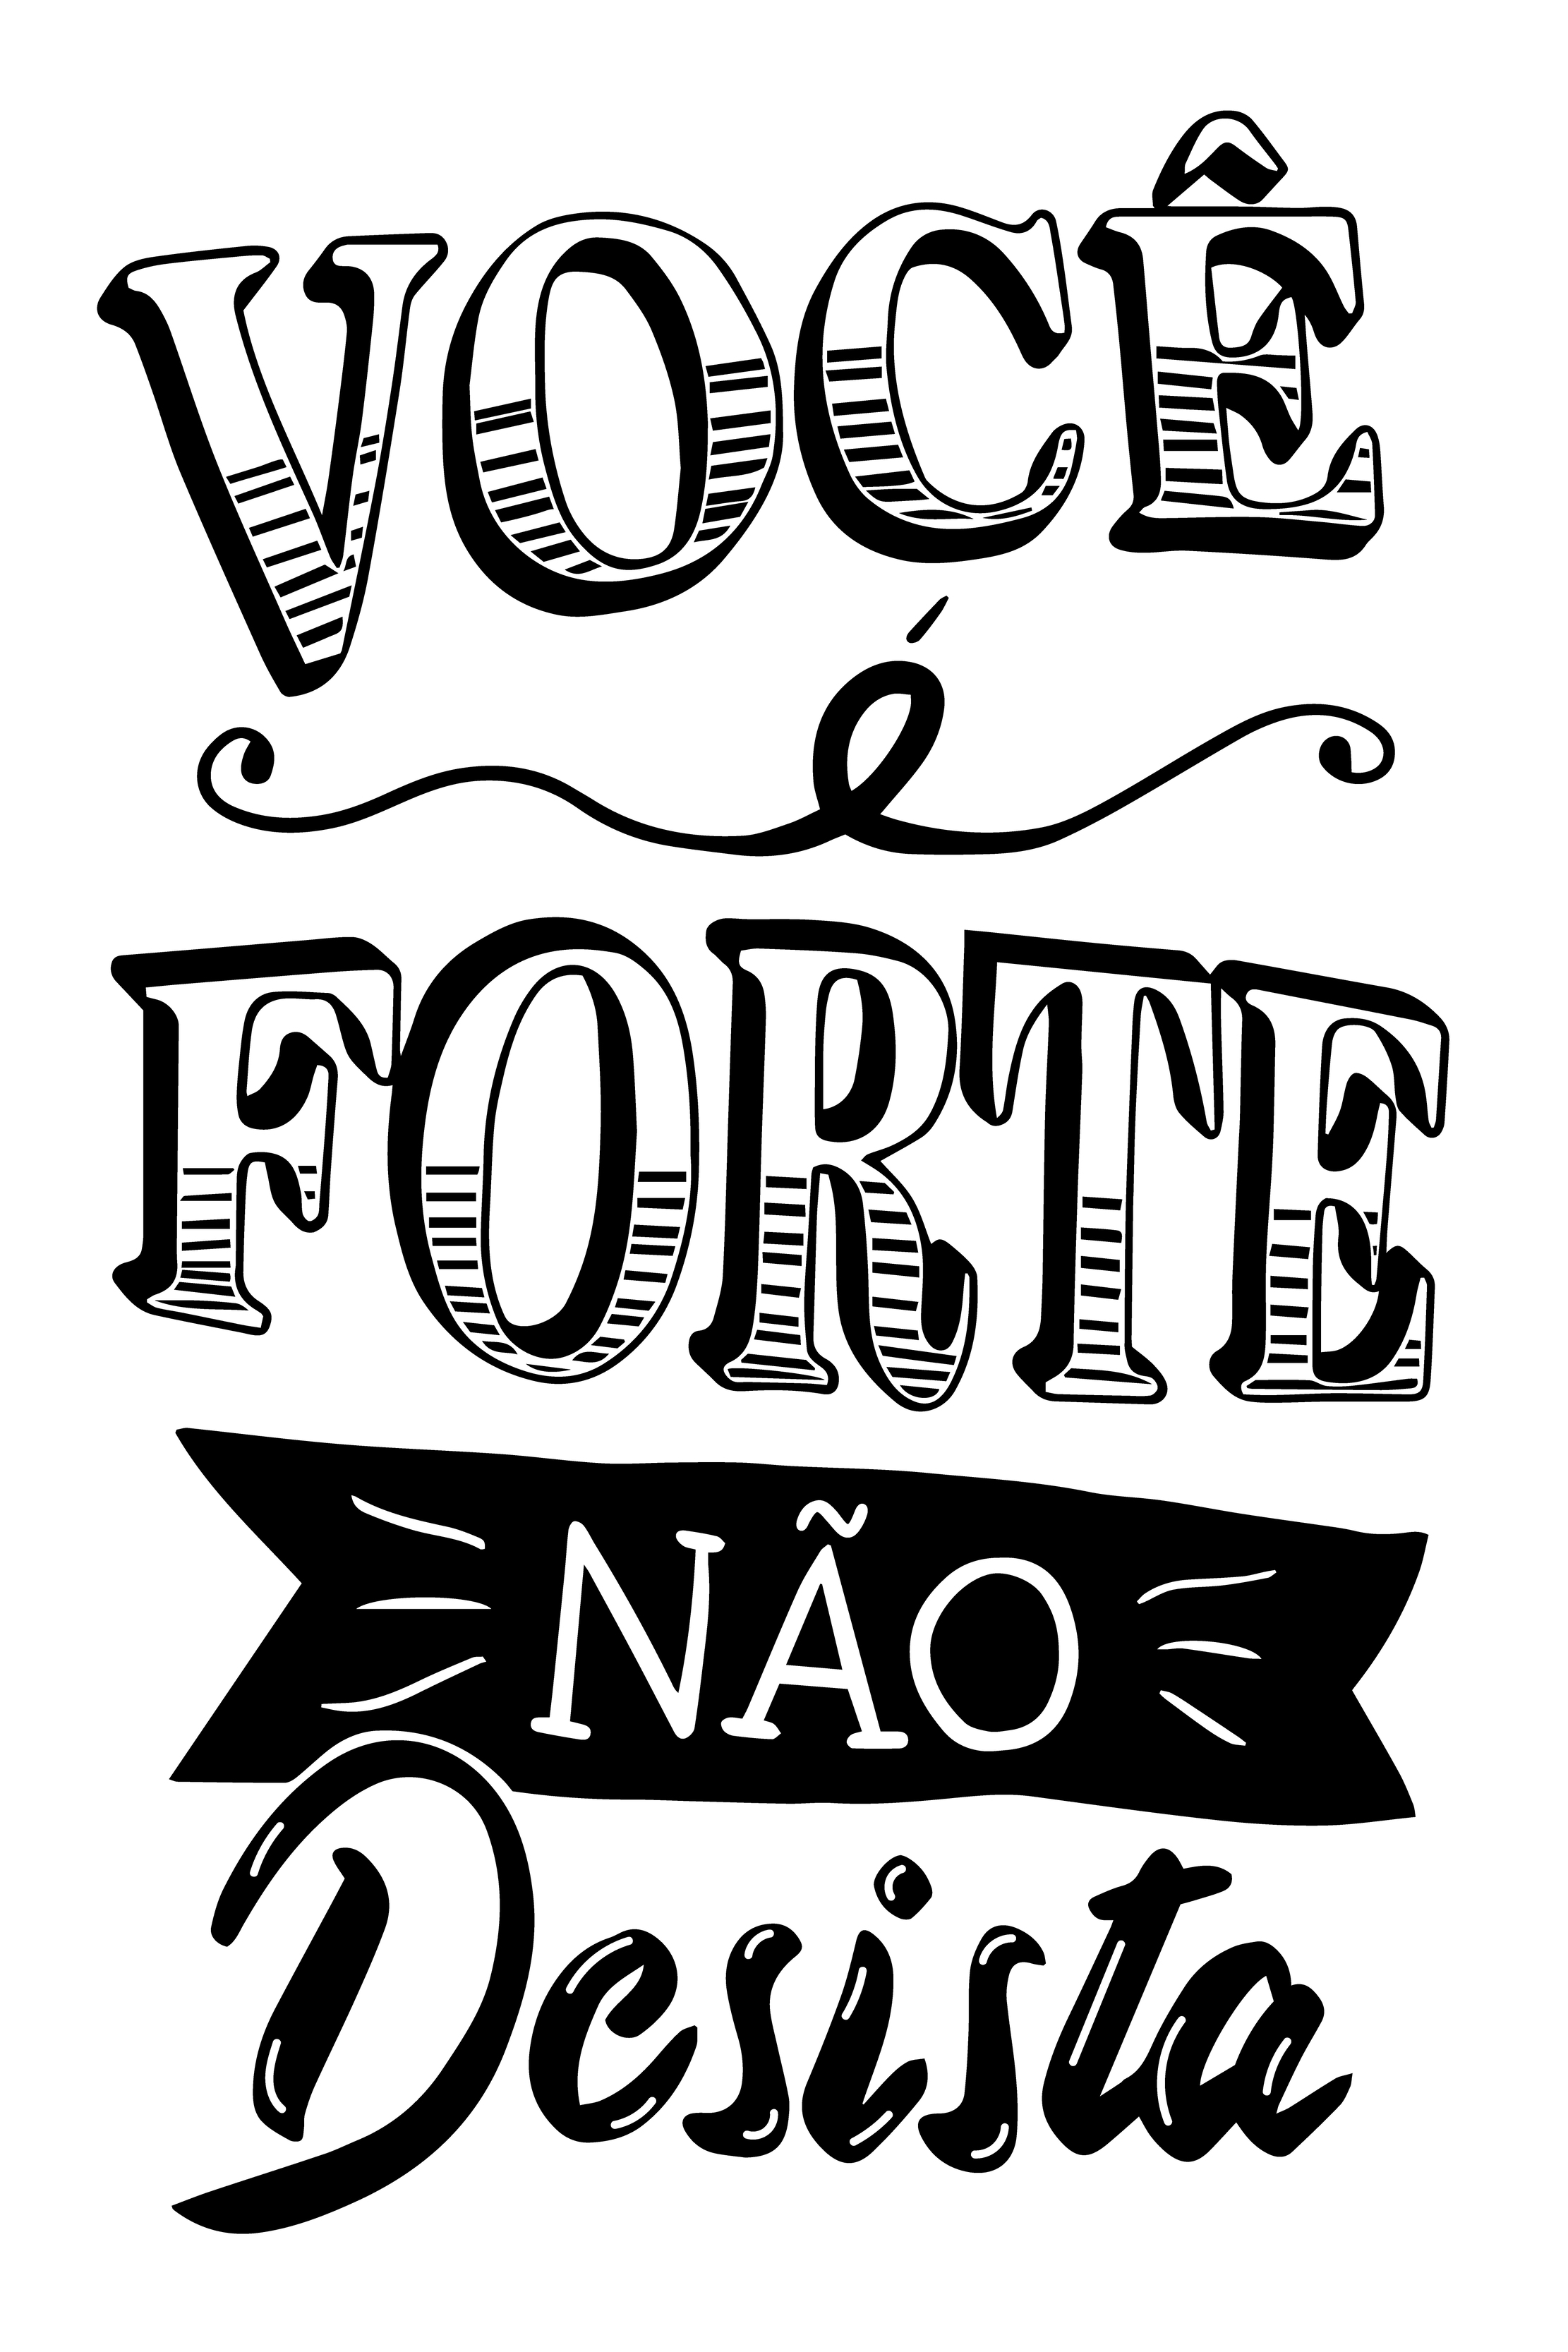 pôster encorajador em português brasileiro. tradução - insista, persista e nunca  desista. 4814658 Vetor no Vecteezy